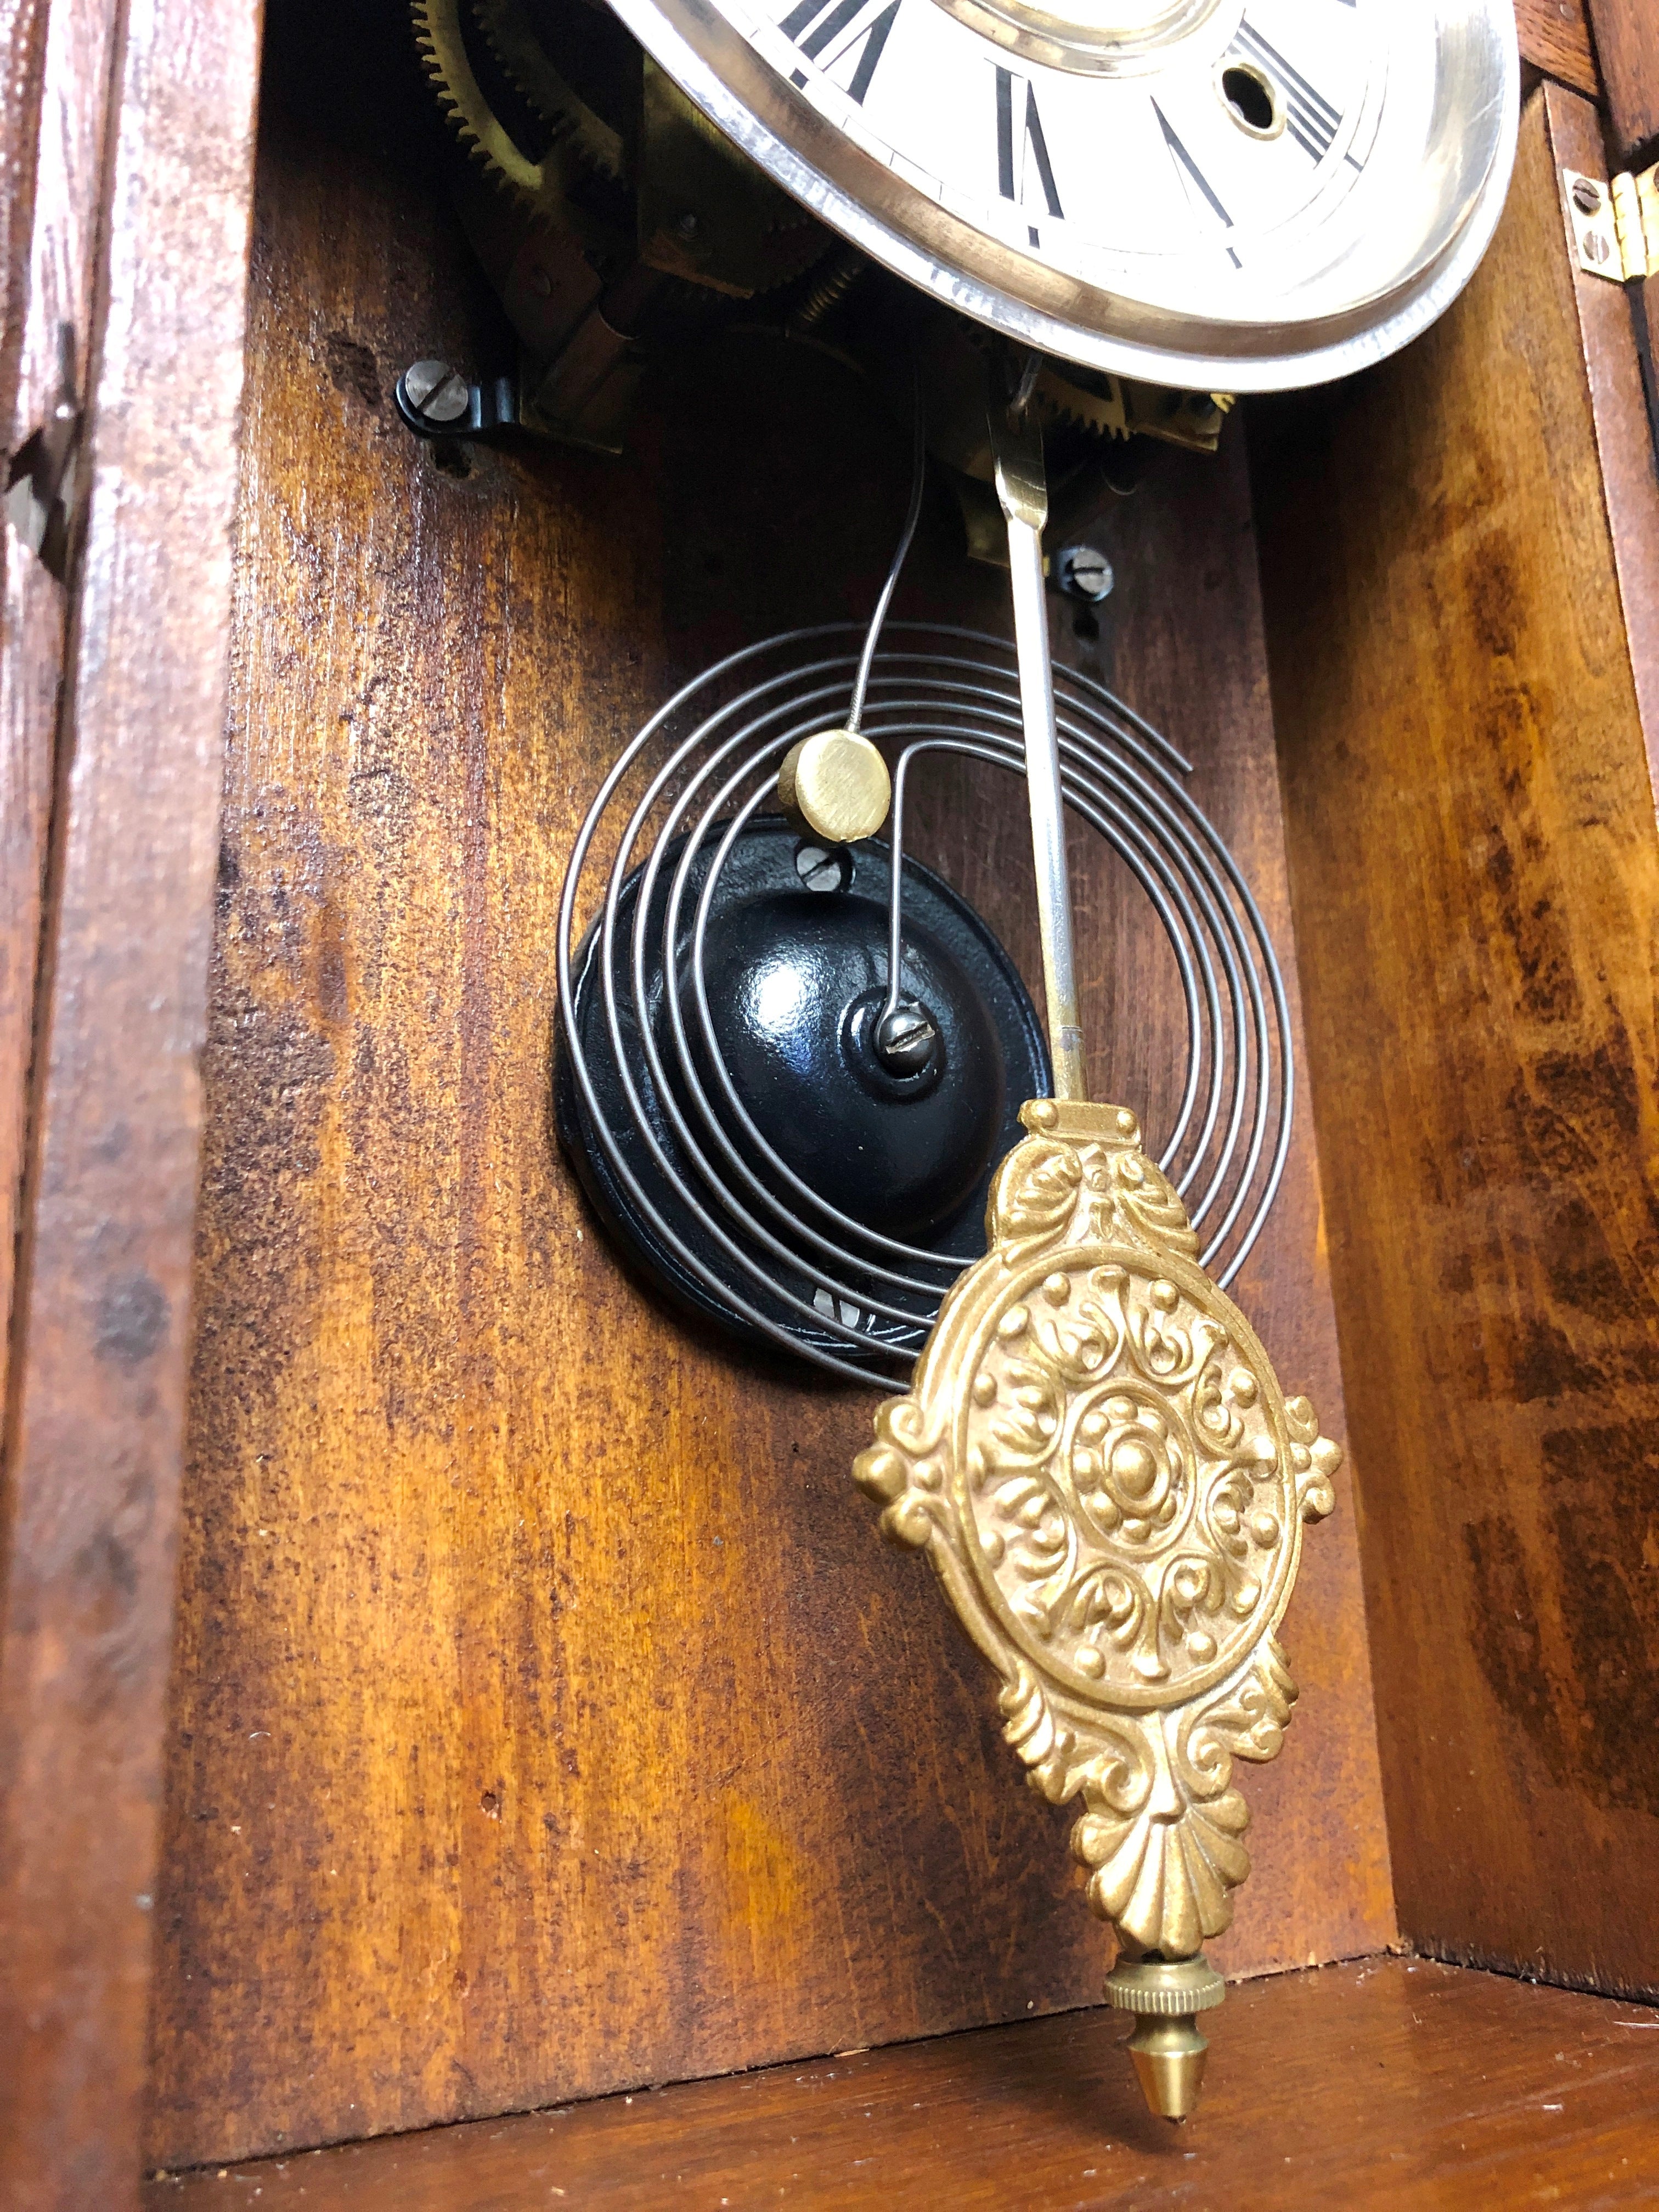 Antique ANSONIA U.S.A Cottage Mantel Clock | eXibit collection